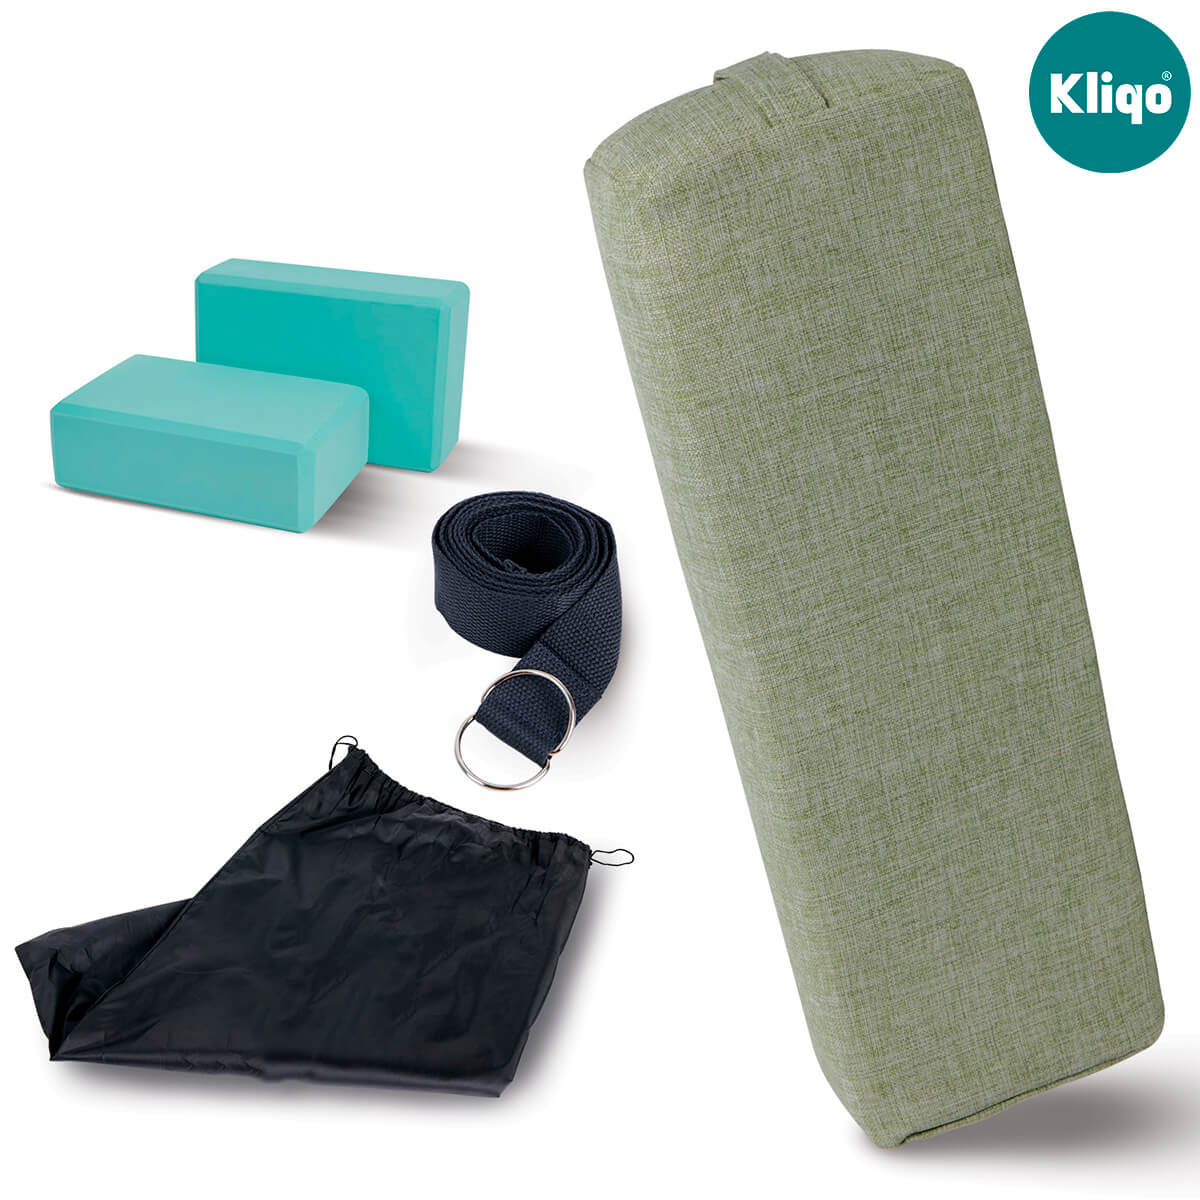 KLIQO™  Kit de Yoga Bolster Completo con una Almohada Y Cojín de